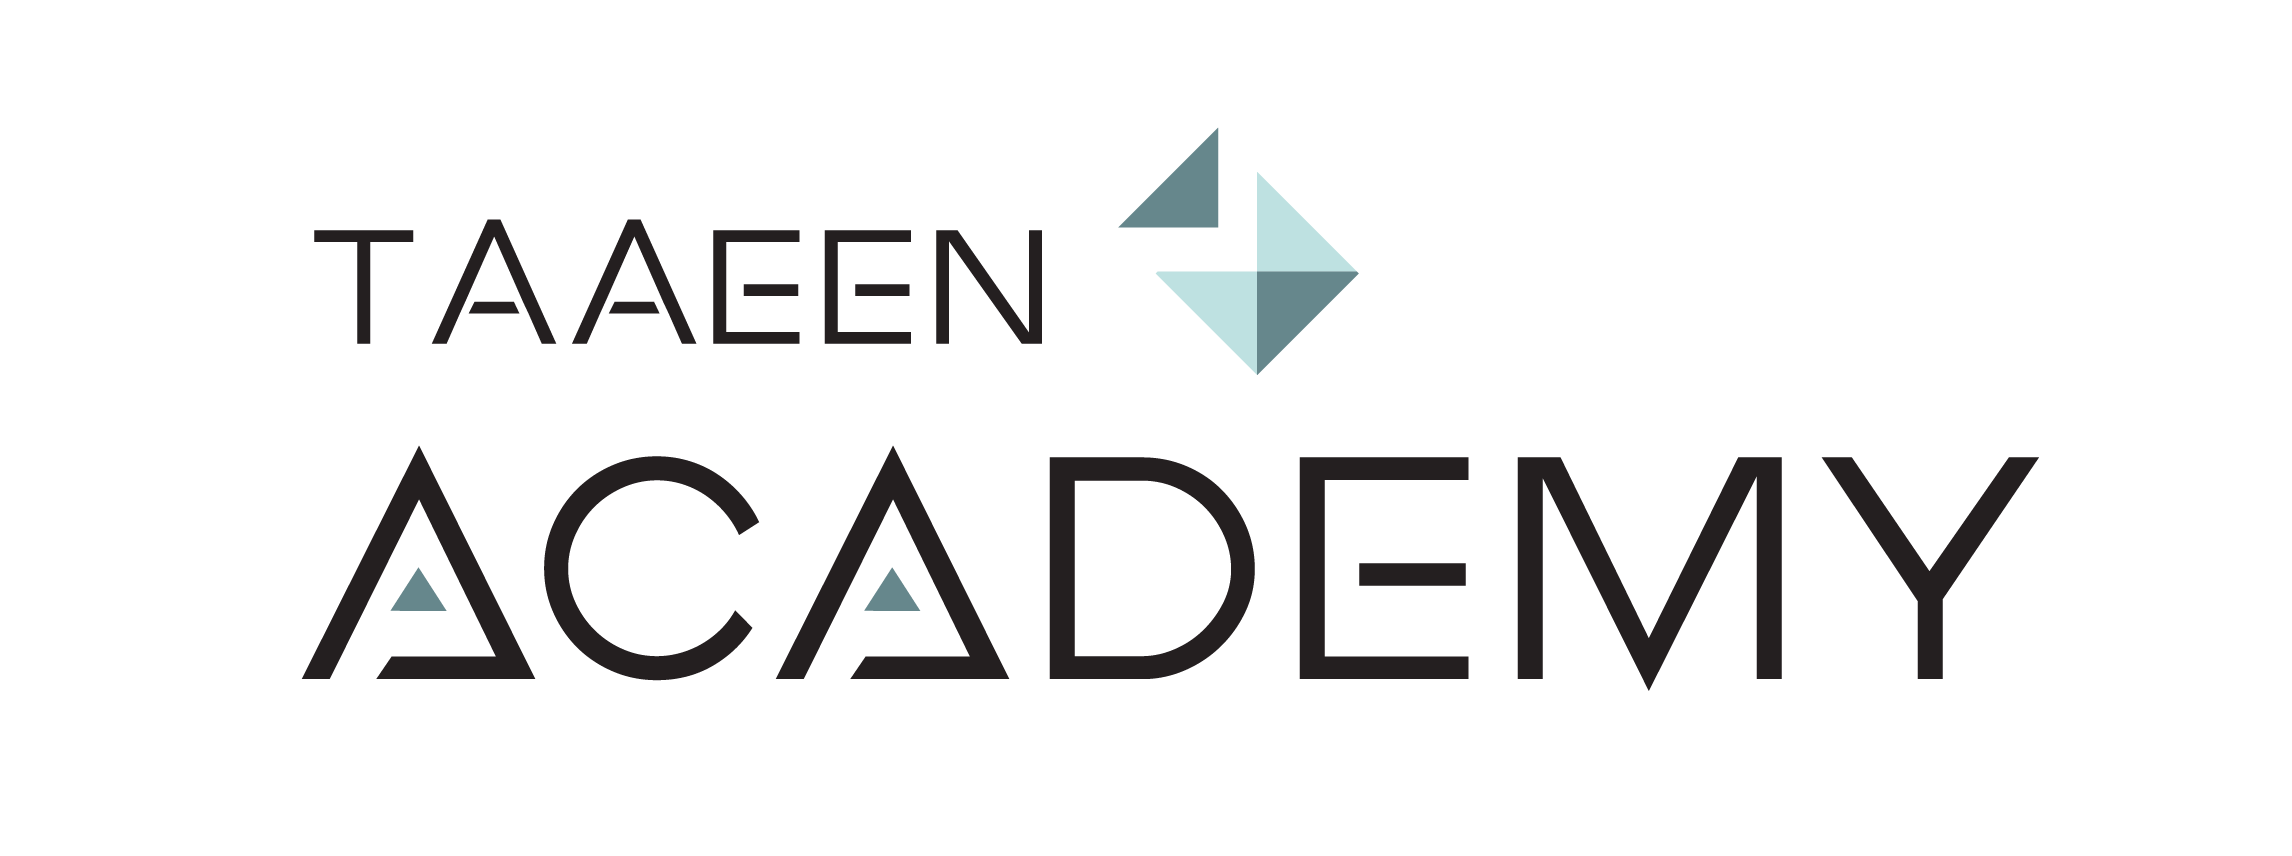 taaeen academy logo